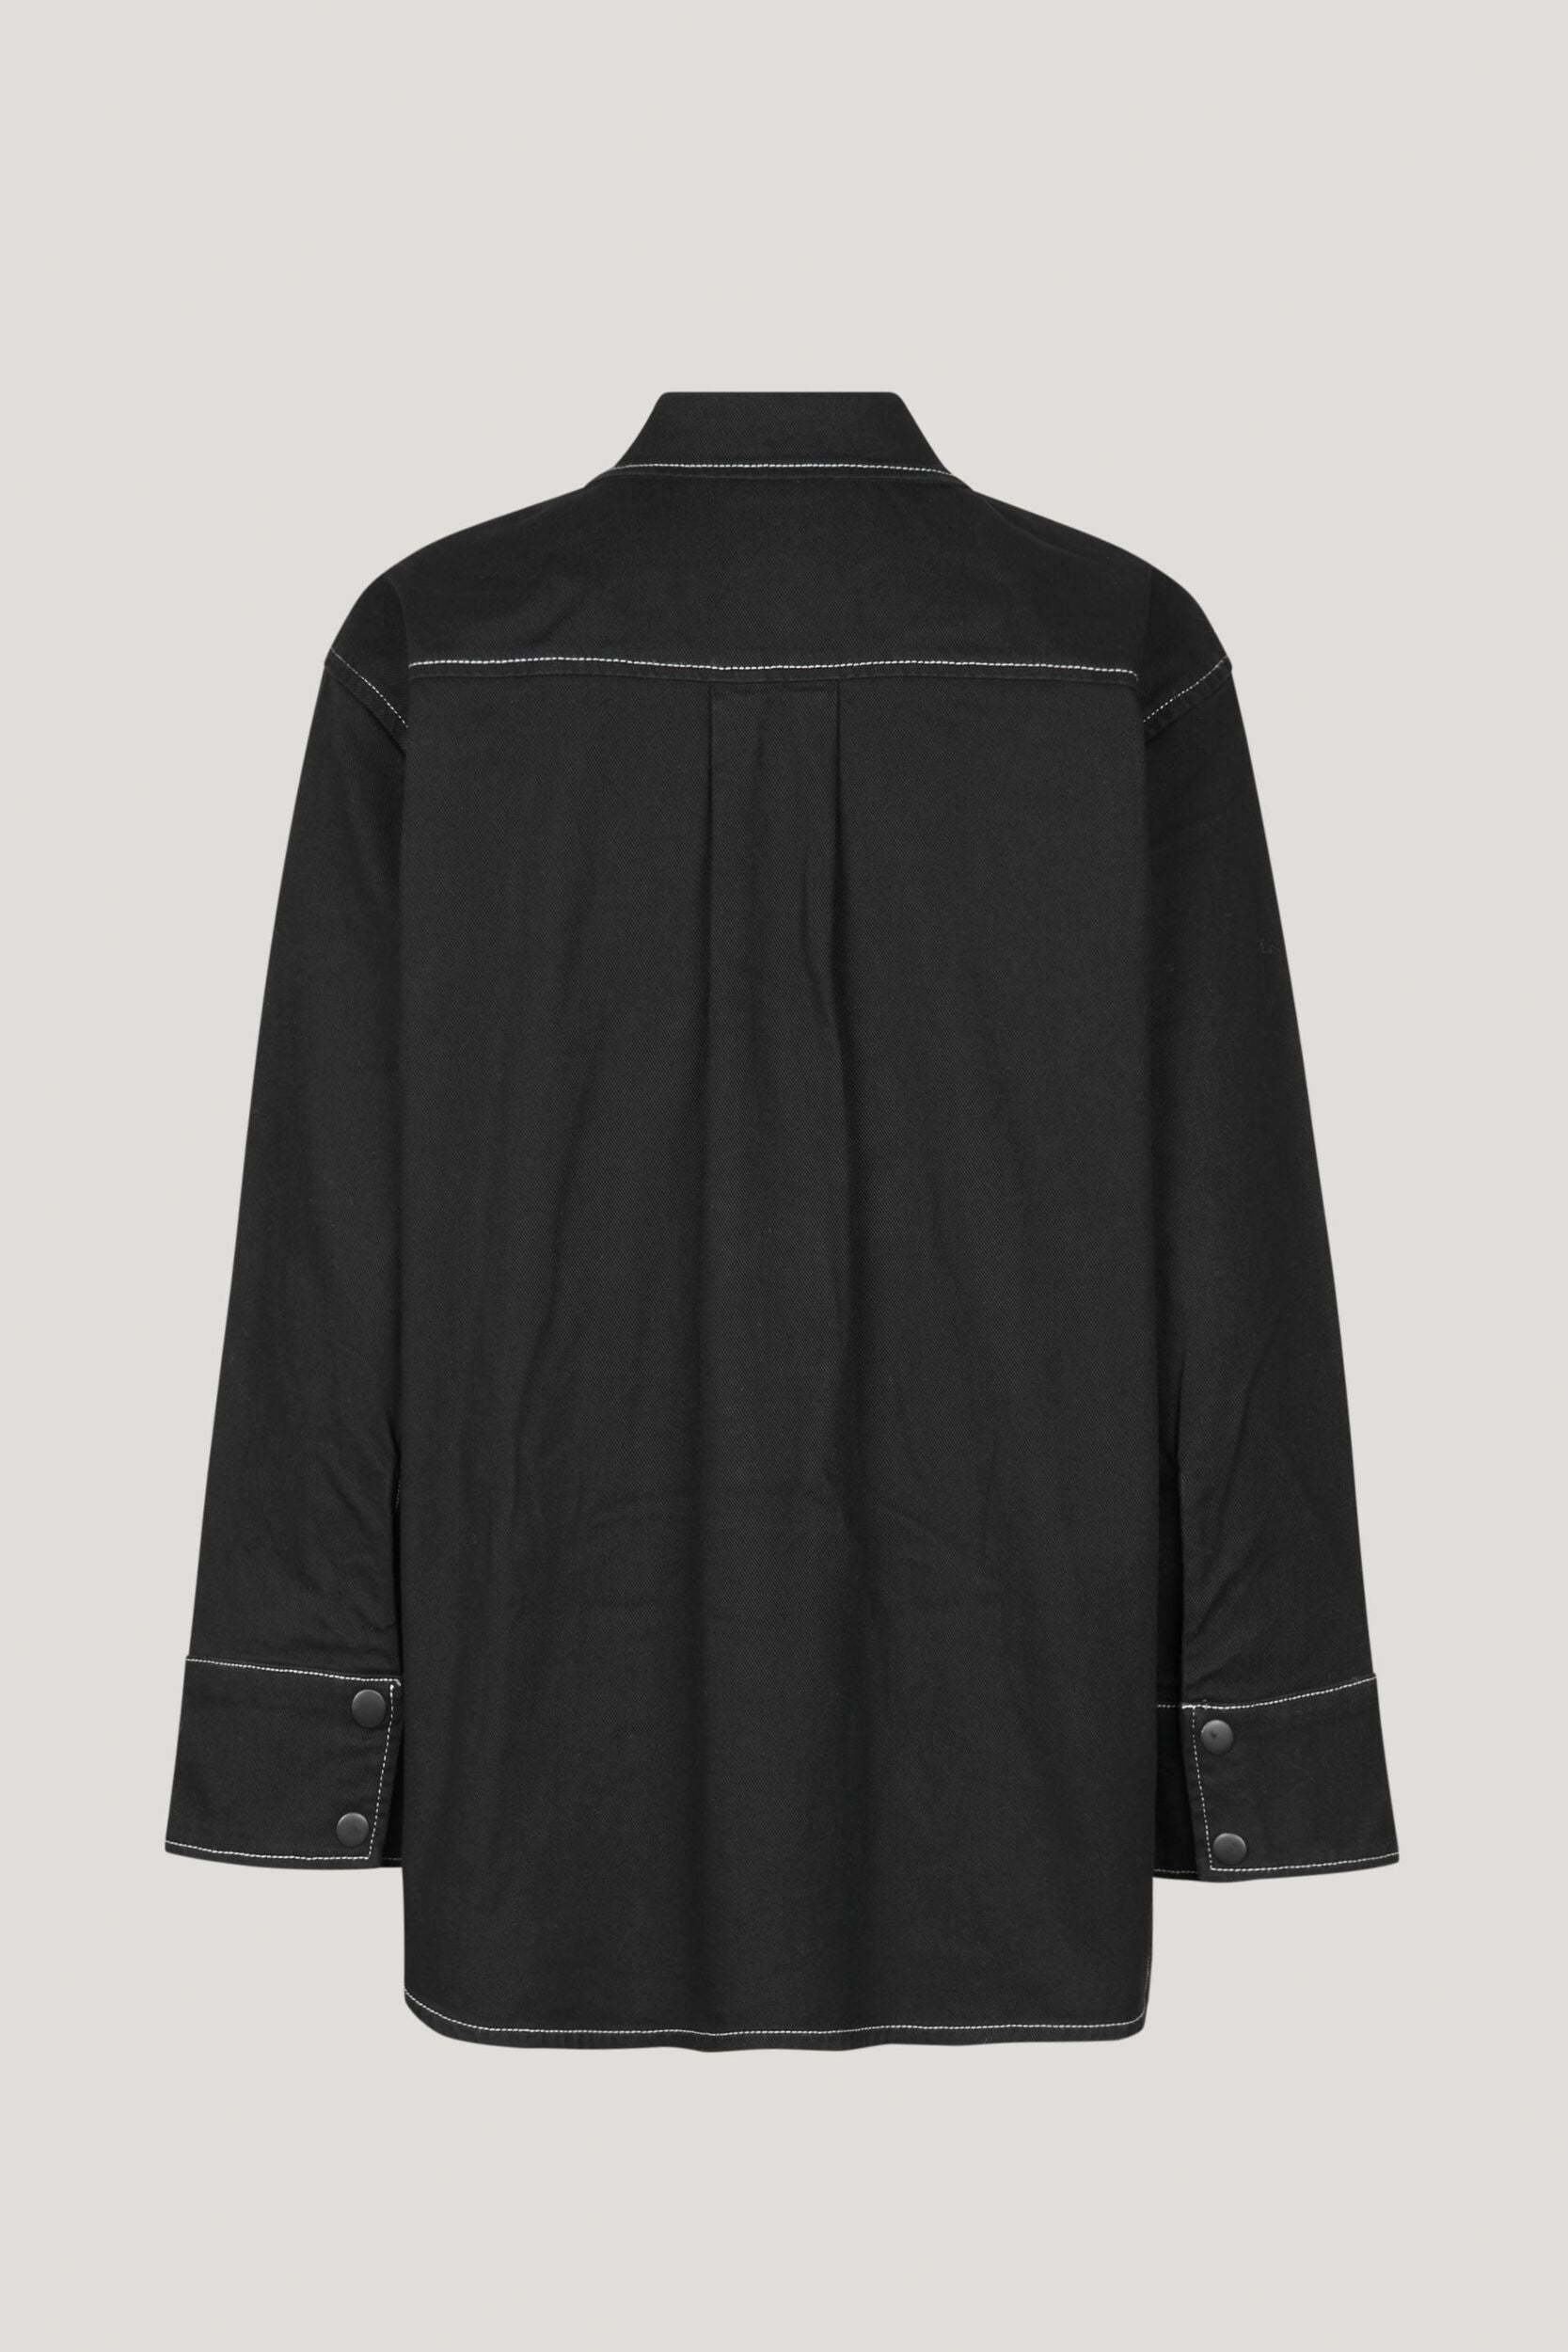 BAUM UND PFERDGARTEN - Bahena Jacket in Black